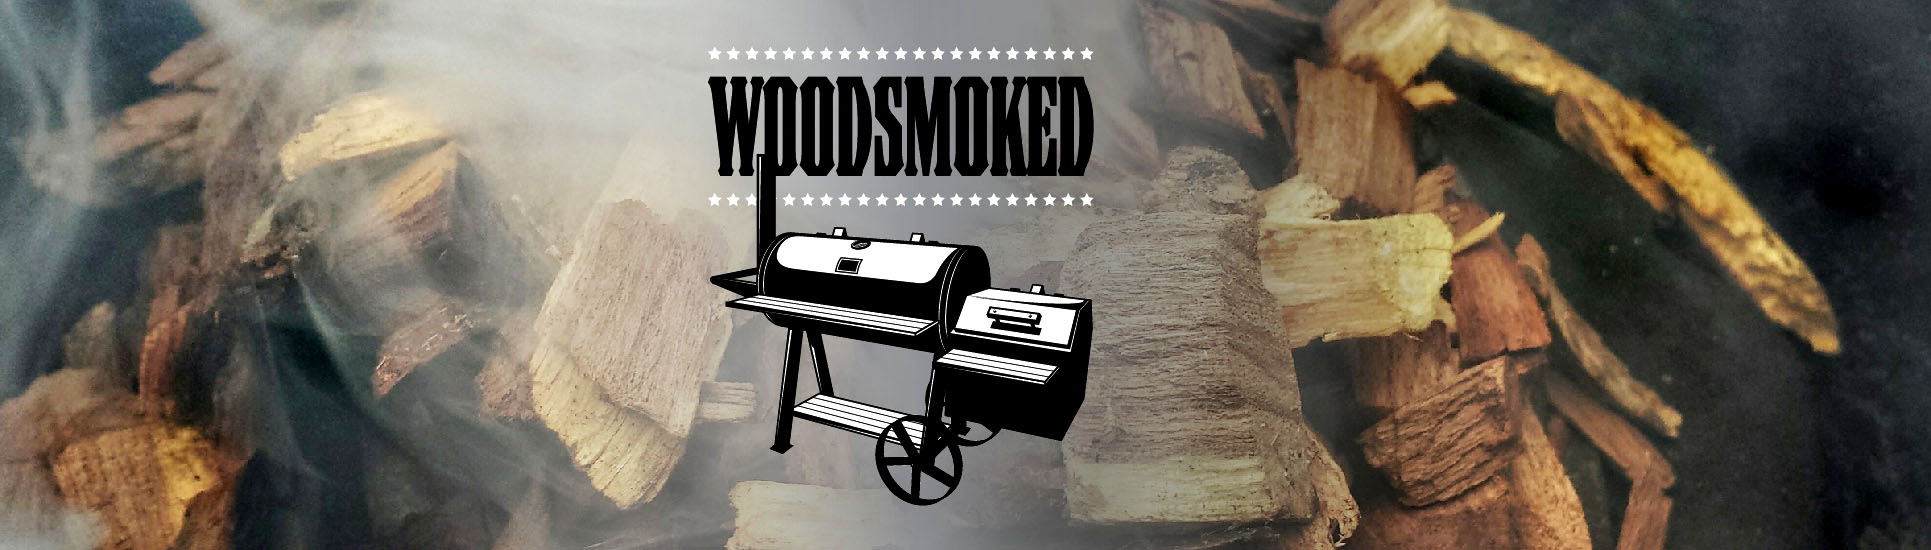 Woodsmoked